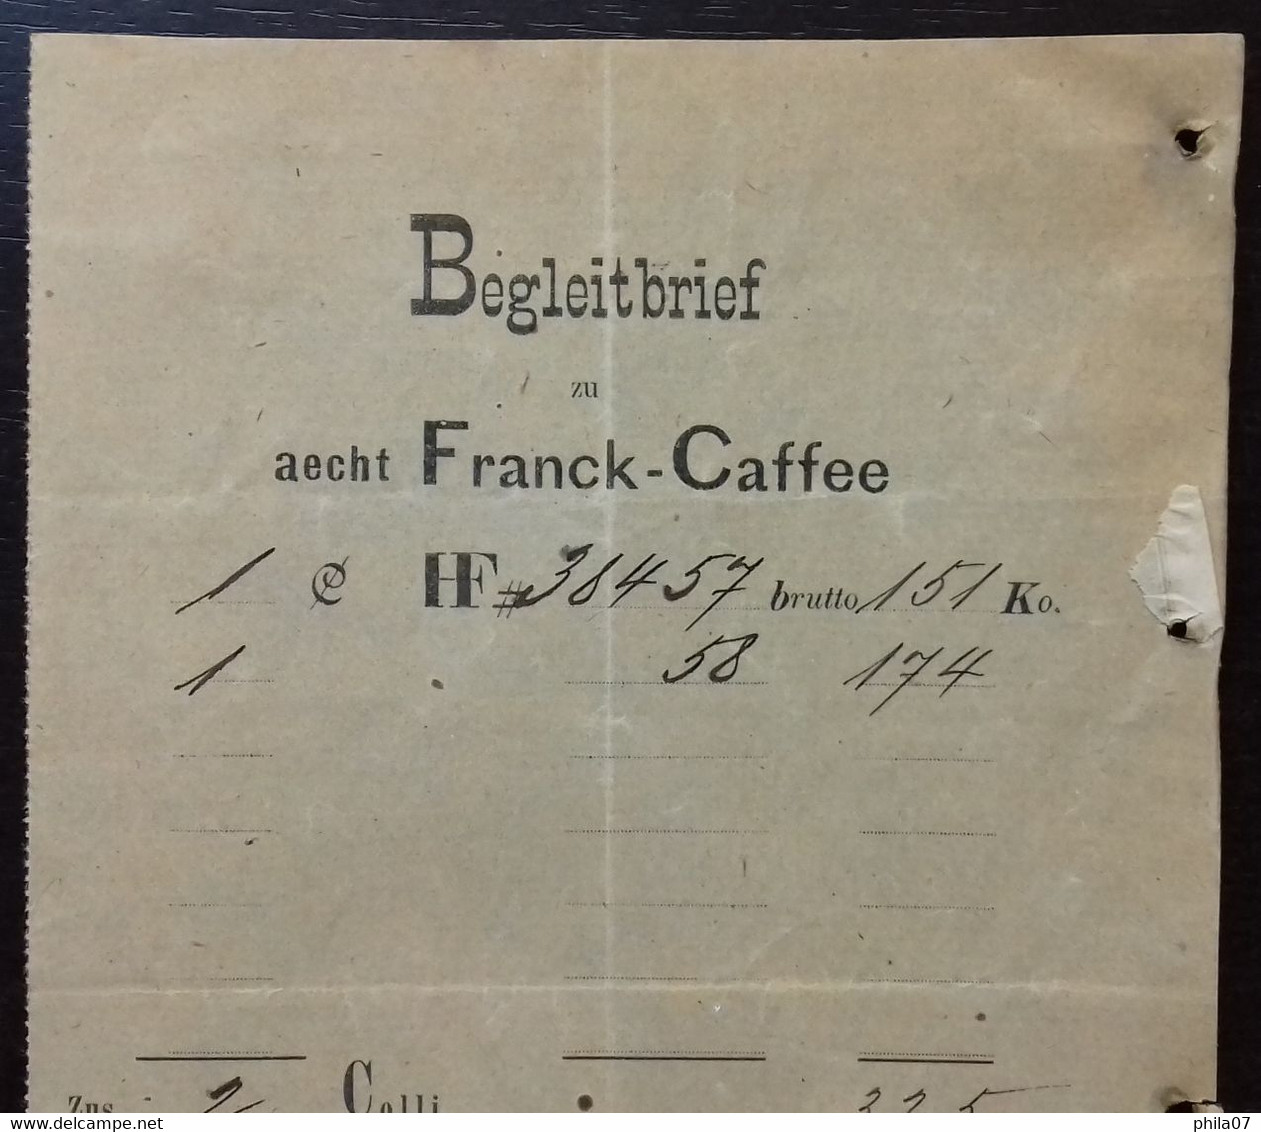 Coffe - Heinrich Franck Sohne, Factura, Agram 1894. Begleitbrief zu aecht Franck-Caffe.